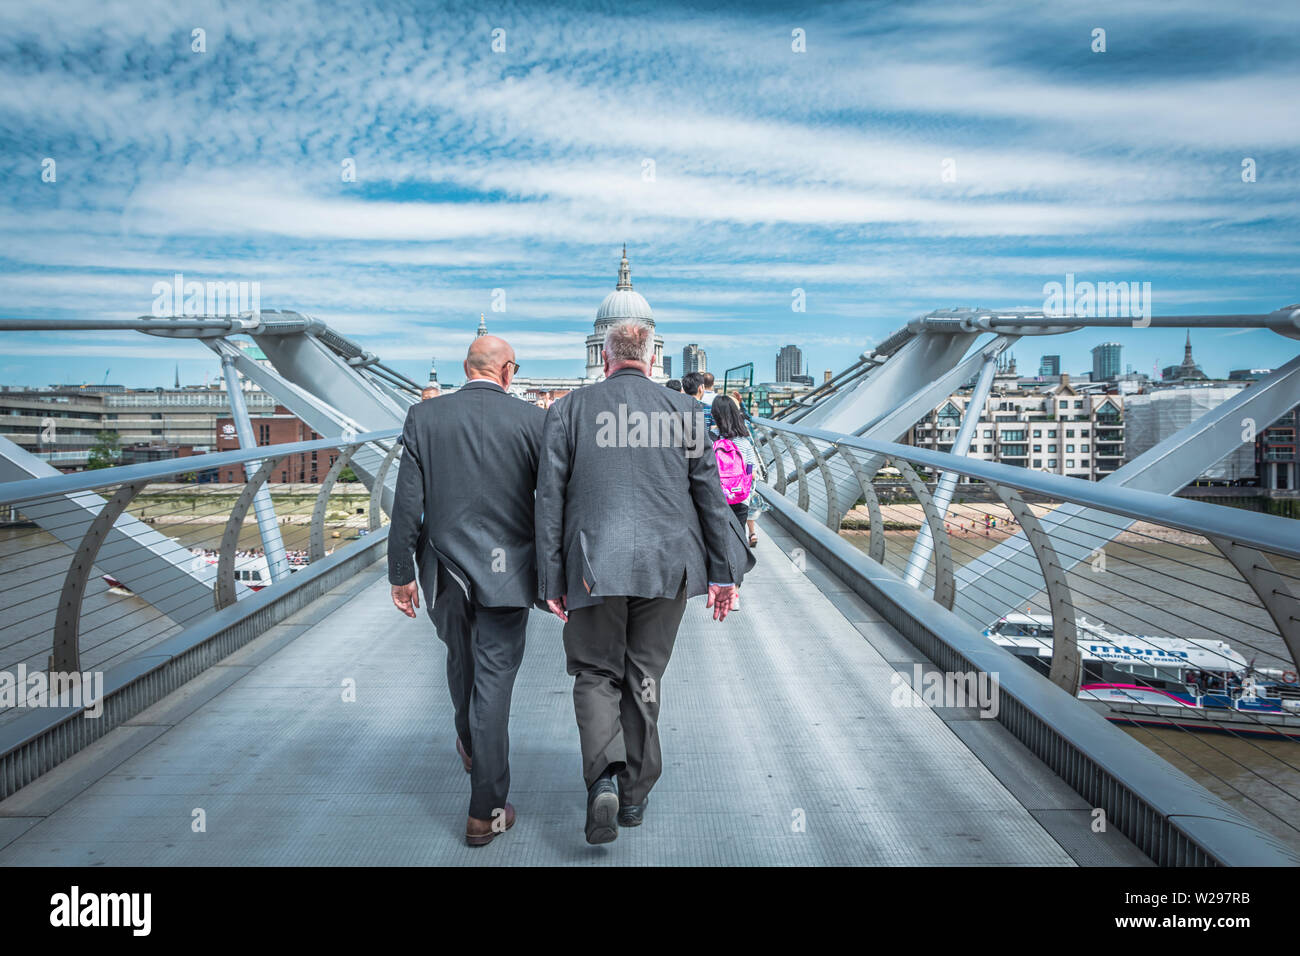 Zwei Männer mittleren Alters, in grauen Anzügen, gehen über die Millennium Bridge (Blade of Light), London, England, Großbritannien Stockfoto